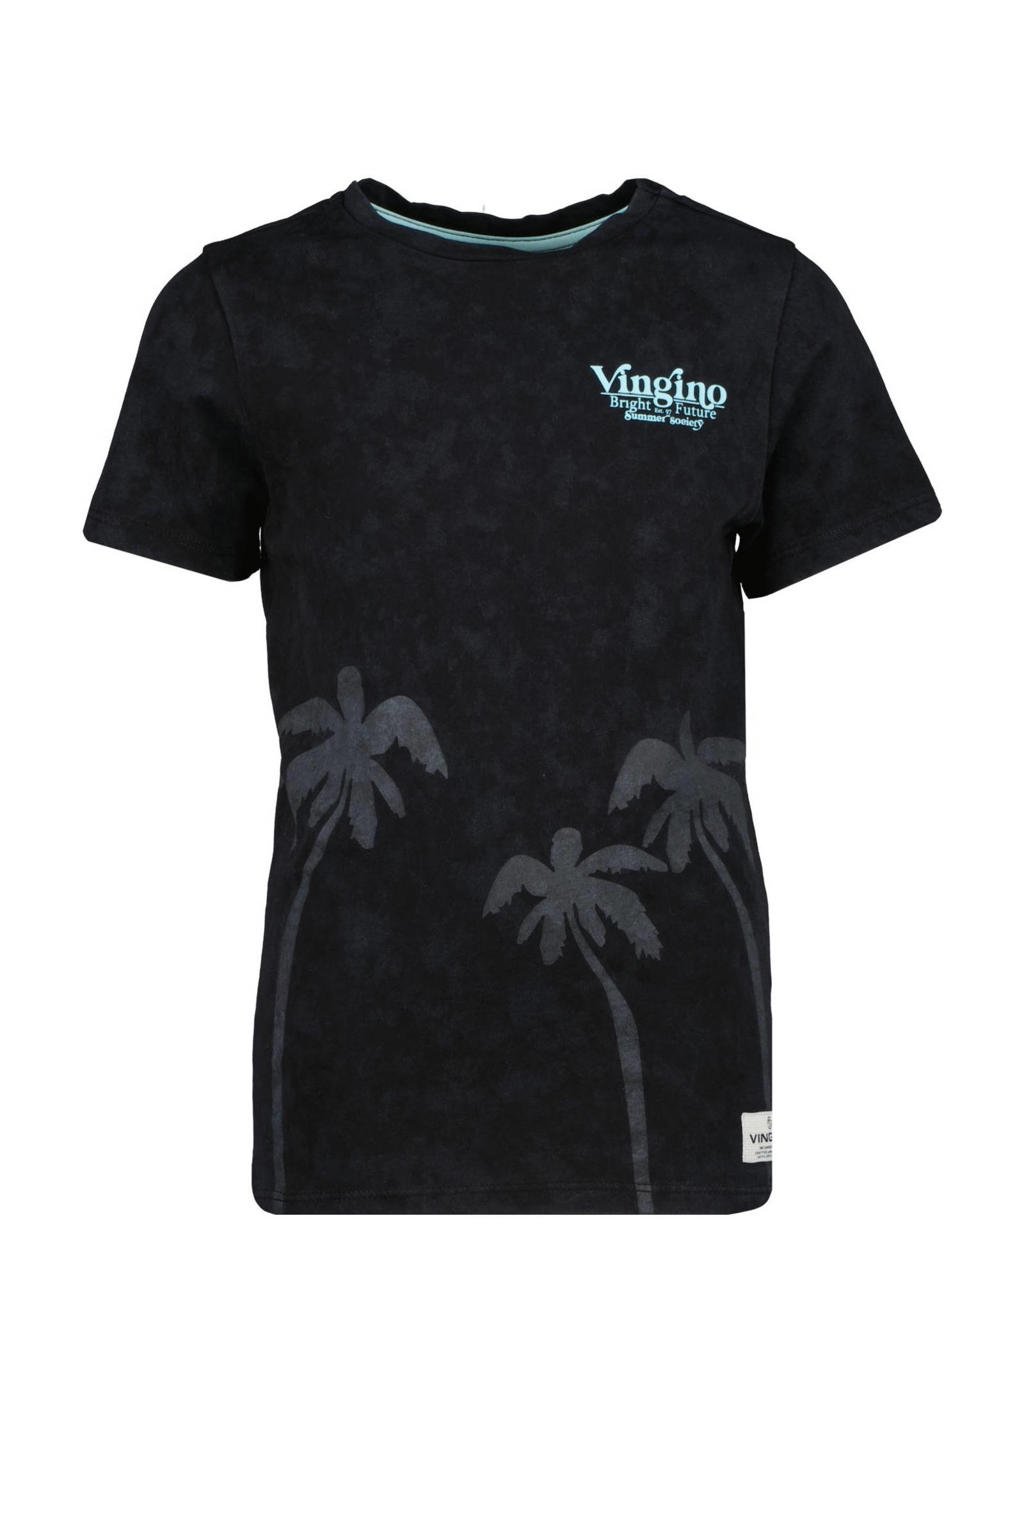 Zwarte jongens Vingino T-shirt Havairo van katoen met printopdruk, korte mouwen en ronde hals